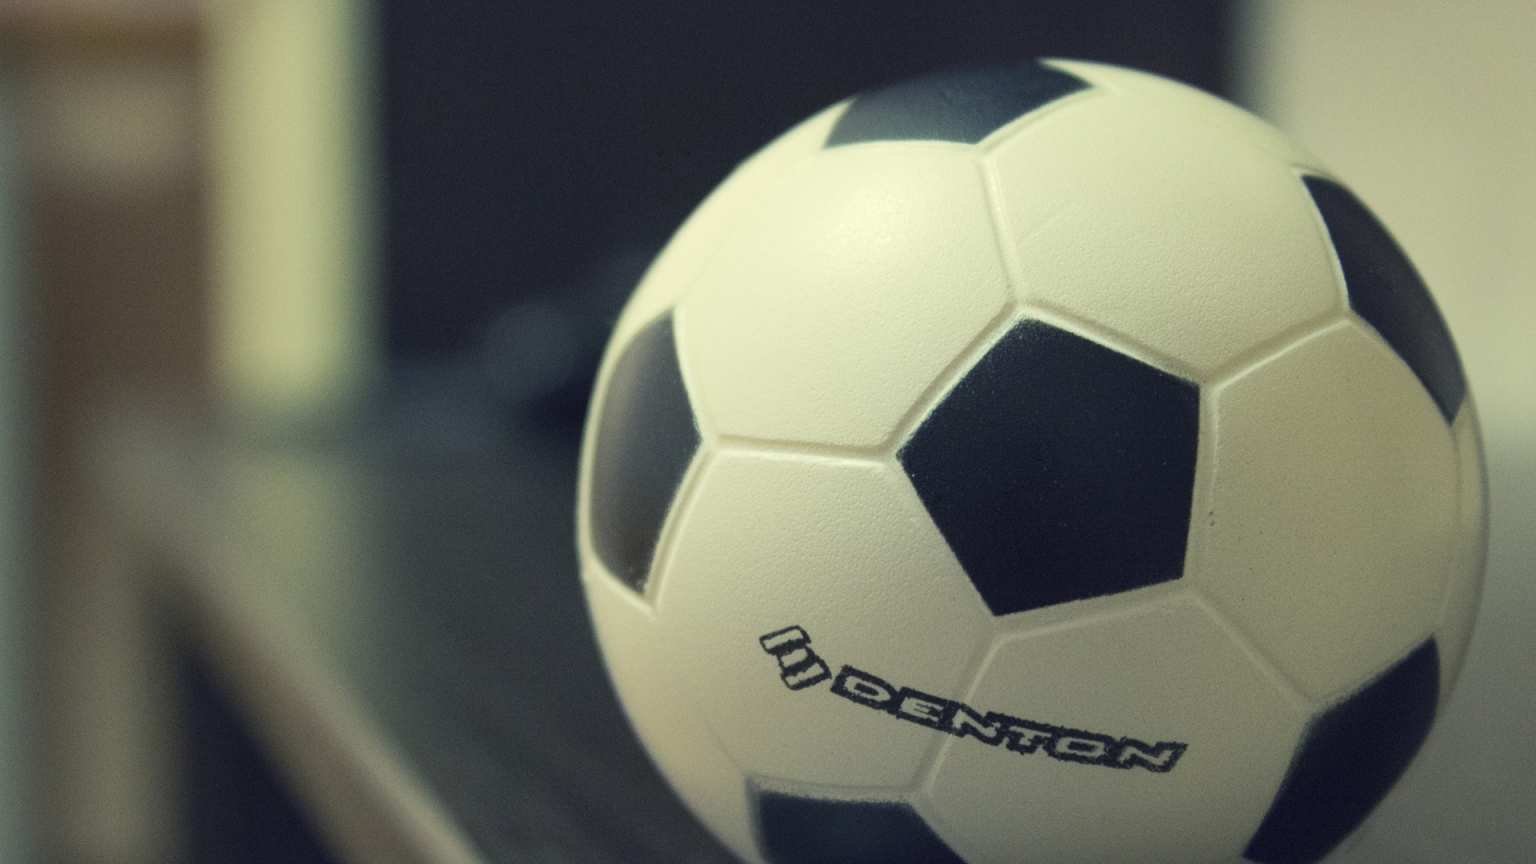 Denton Soccer Ball for 1536 x 864 HDTV resolution